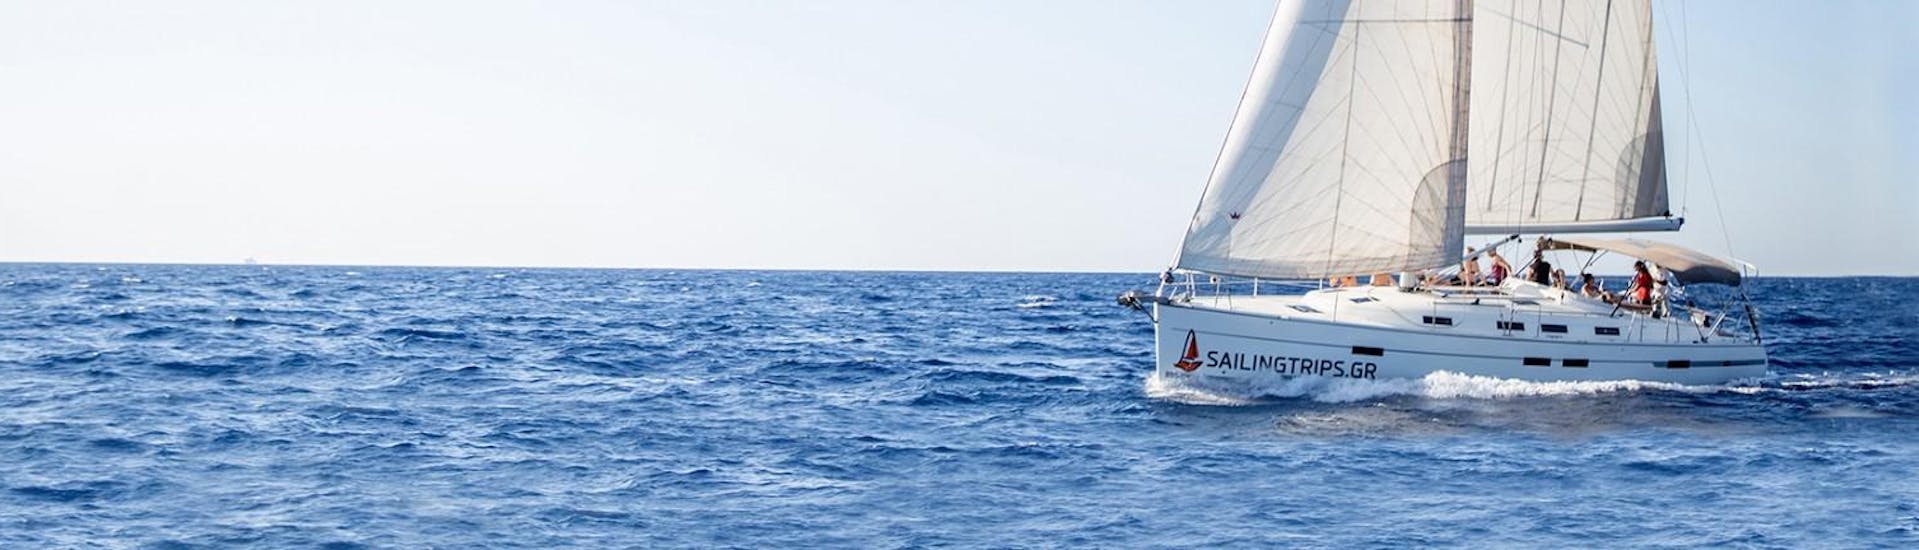 Segelboot von Sailingtrips.gr Heraklion während einer Segeltour.